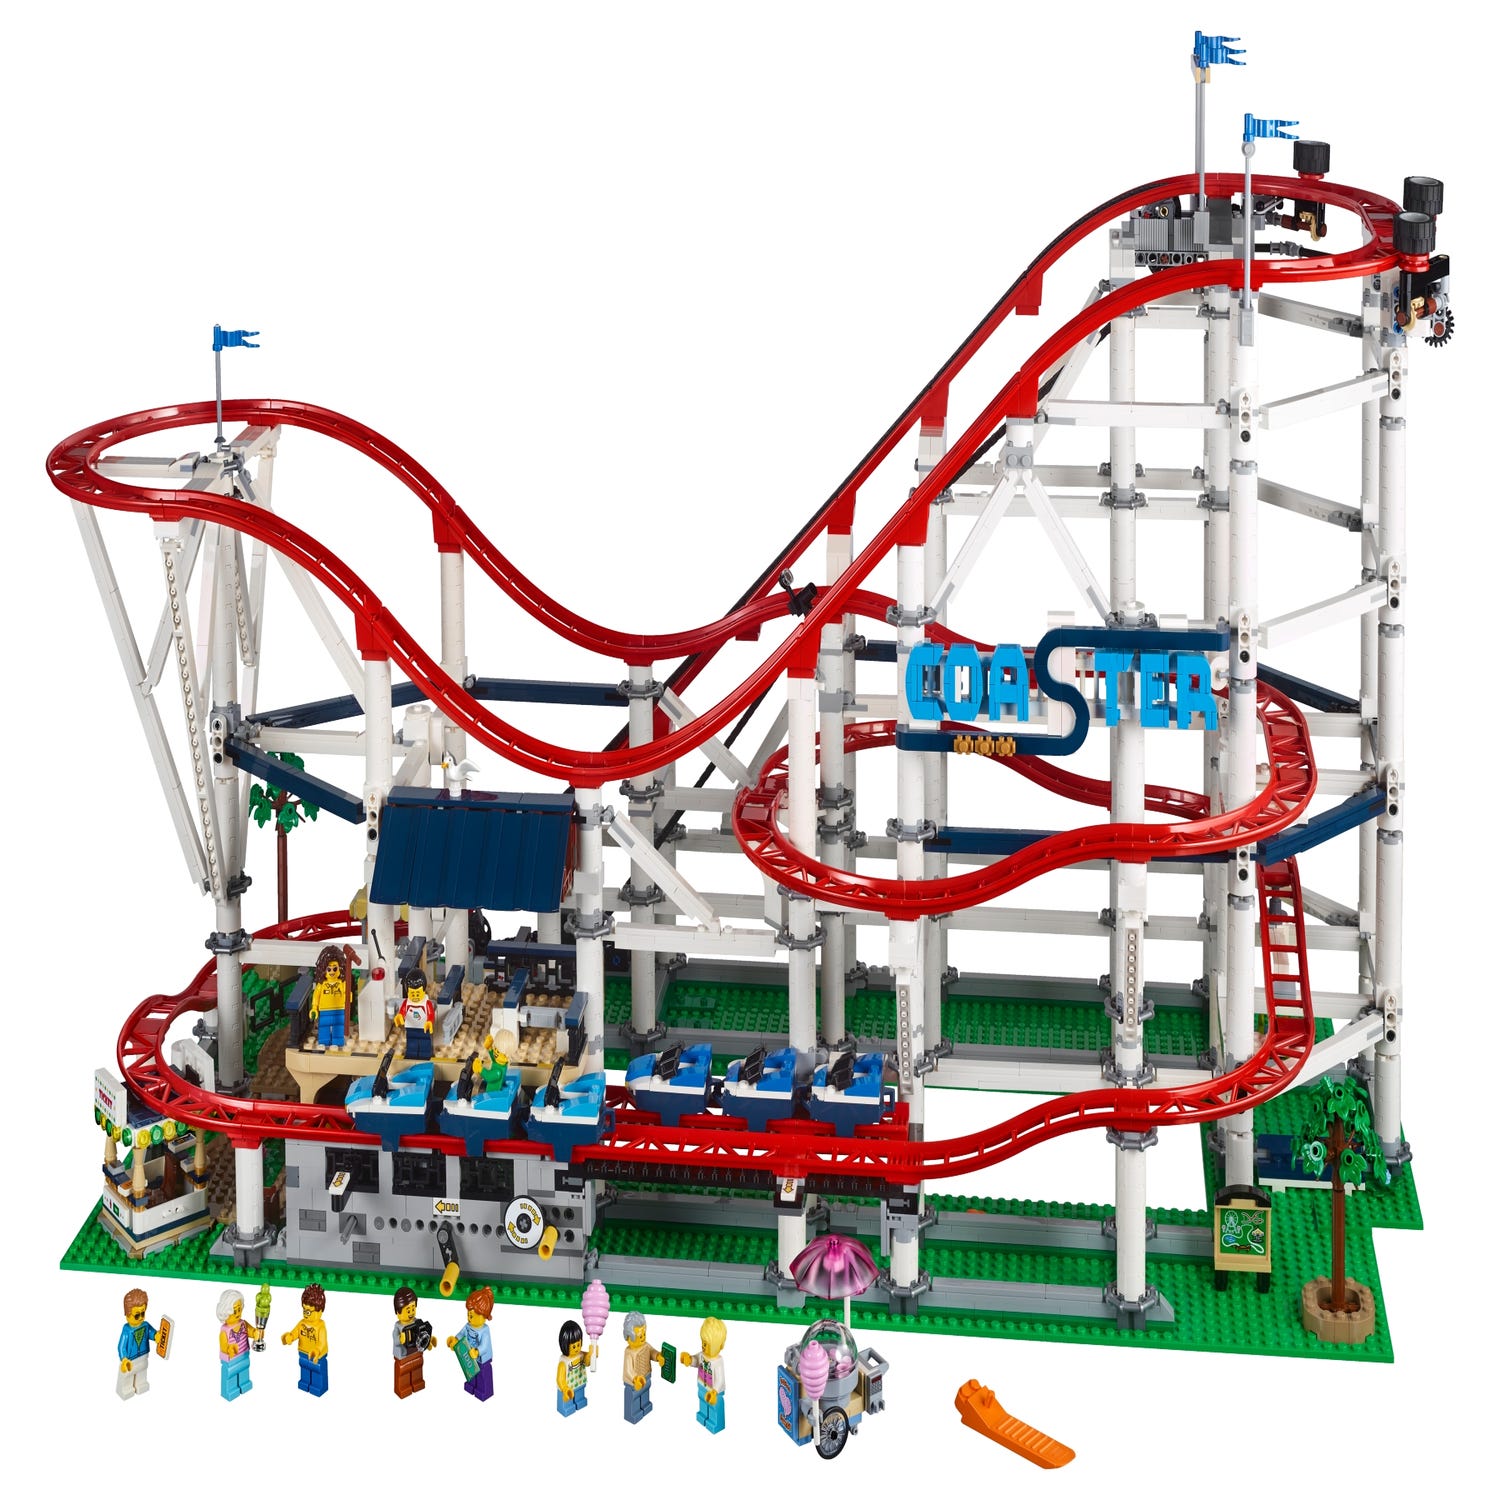 Lego City Roller Coaster | escapeauthority.com